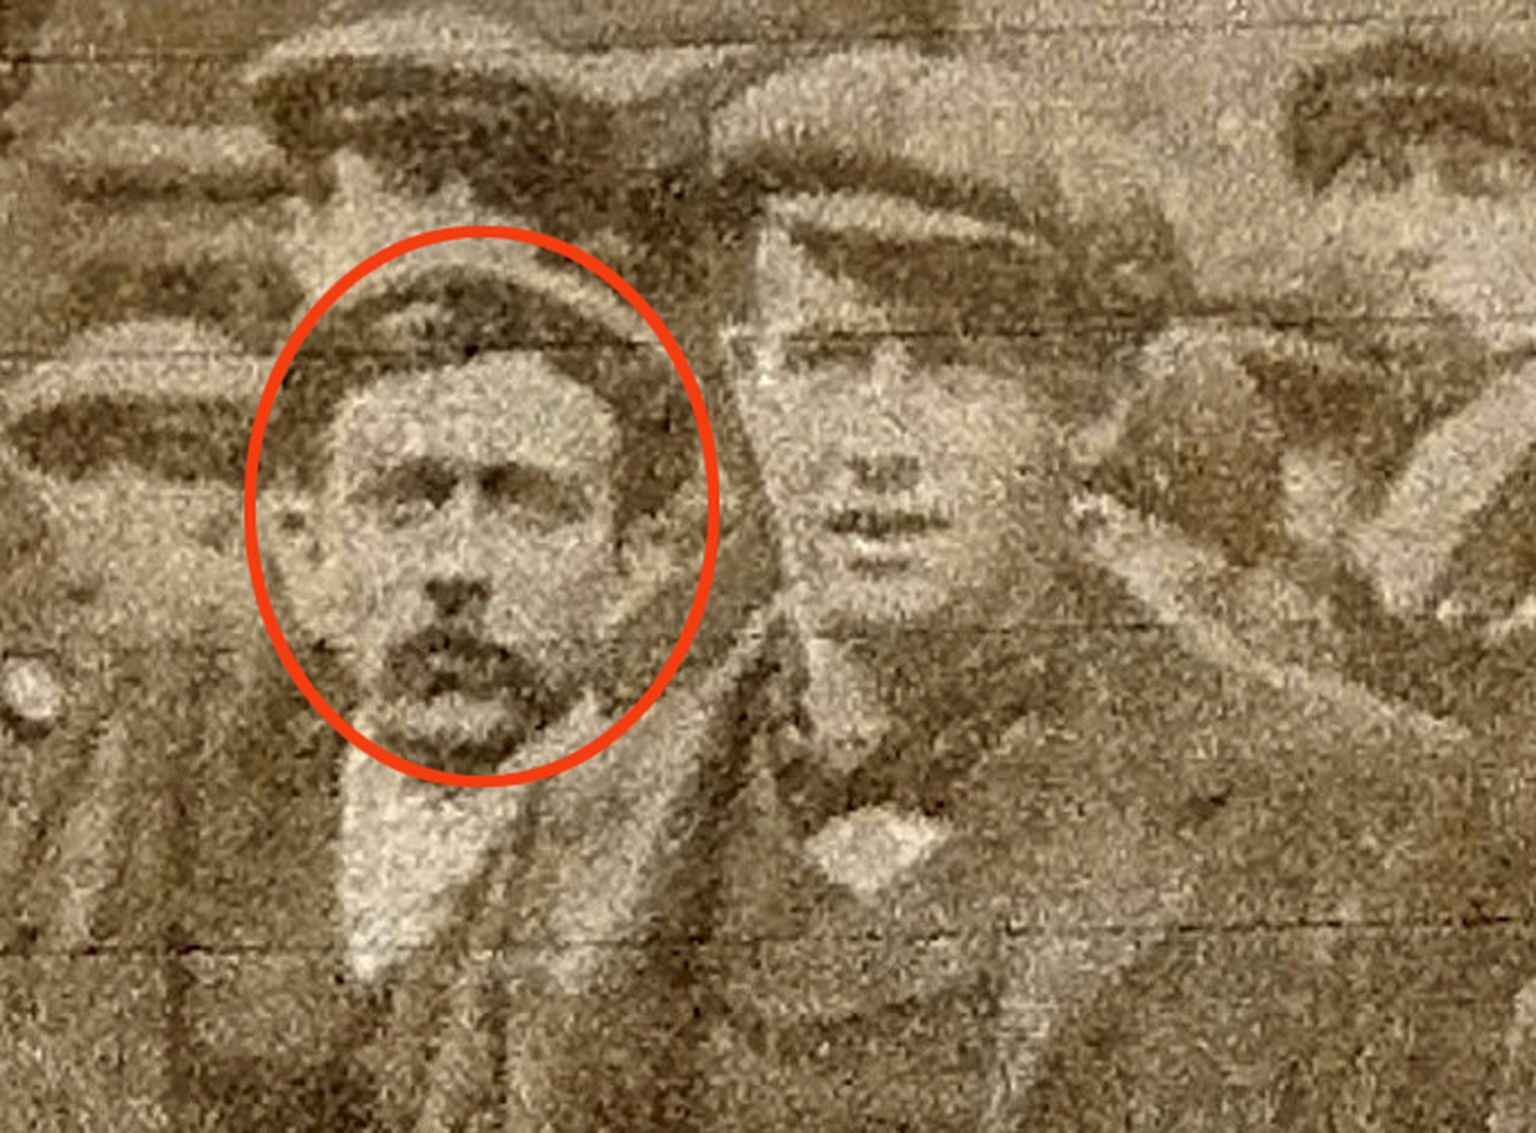 George Beauchamp (vasakul) 1912. aasta ajalehefotol (punases ringis)